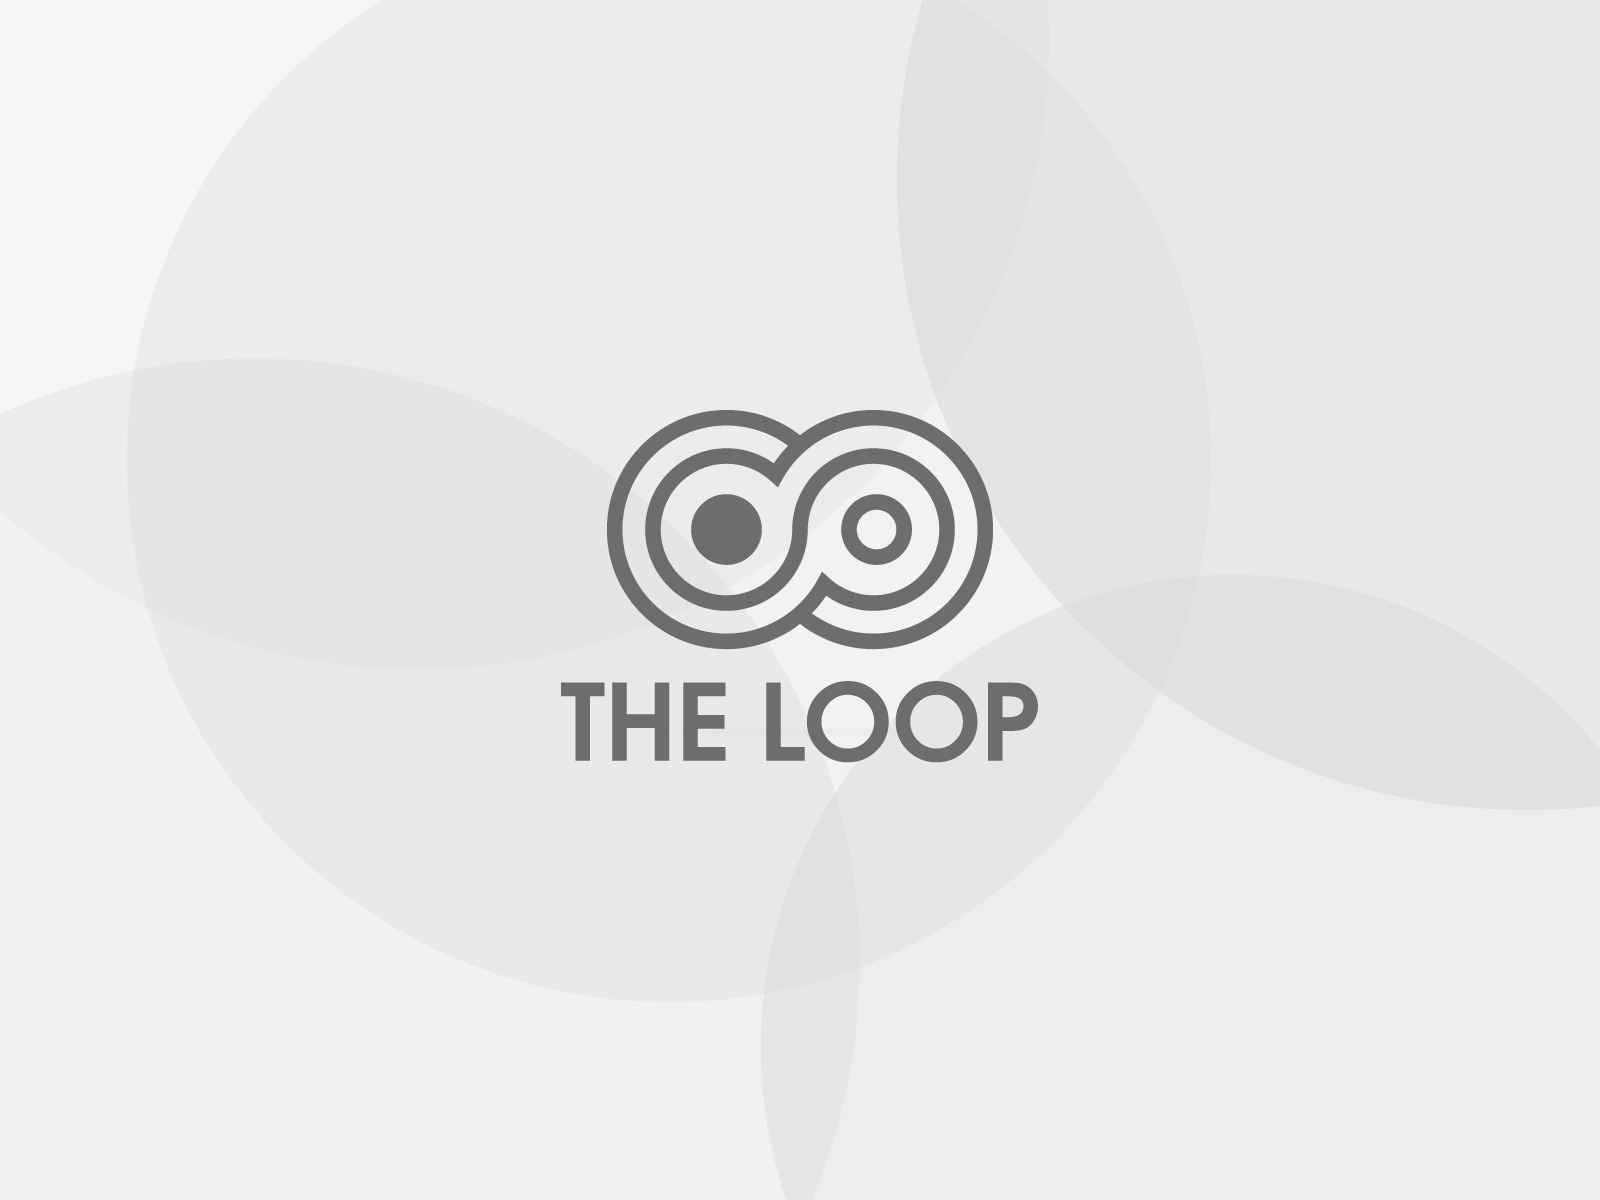 Killer Loop Logo PNG Transparent & SVG Vector - Freebie Supply